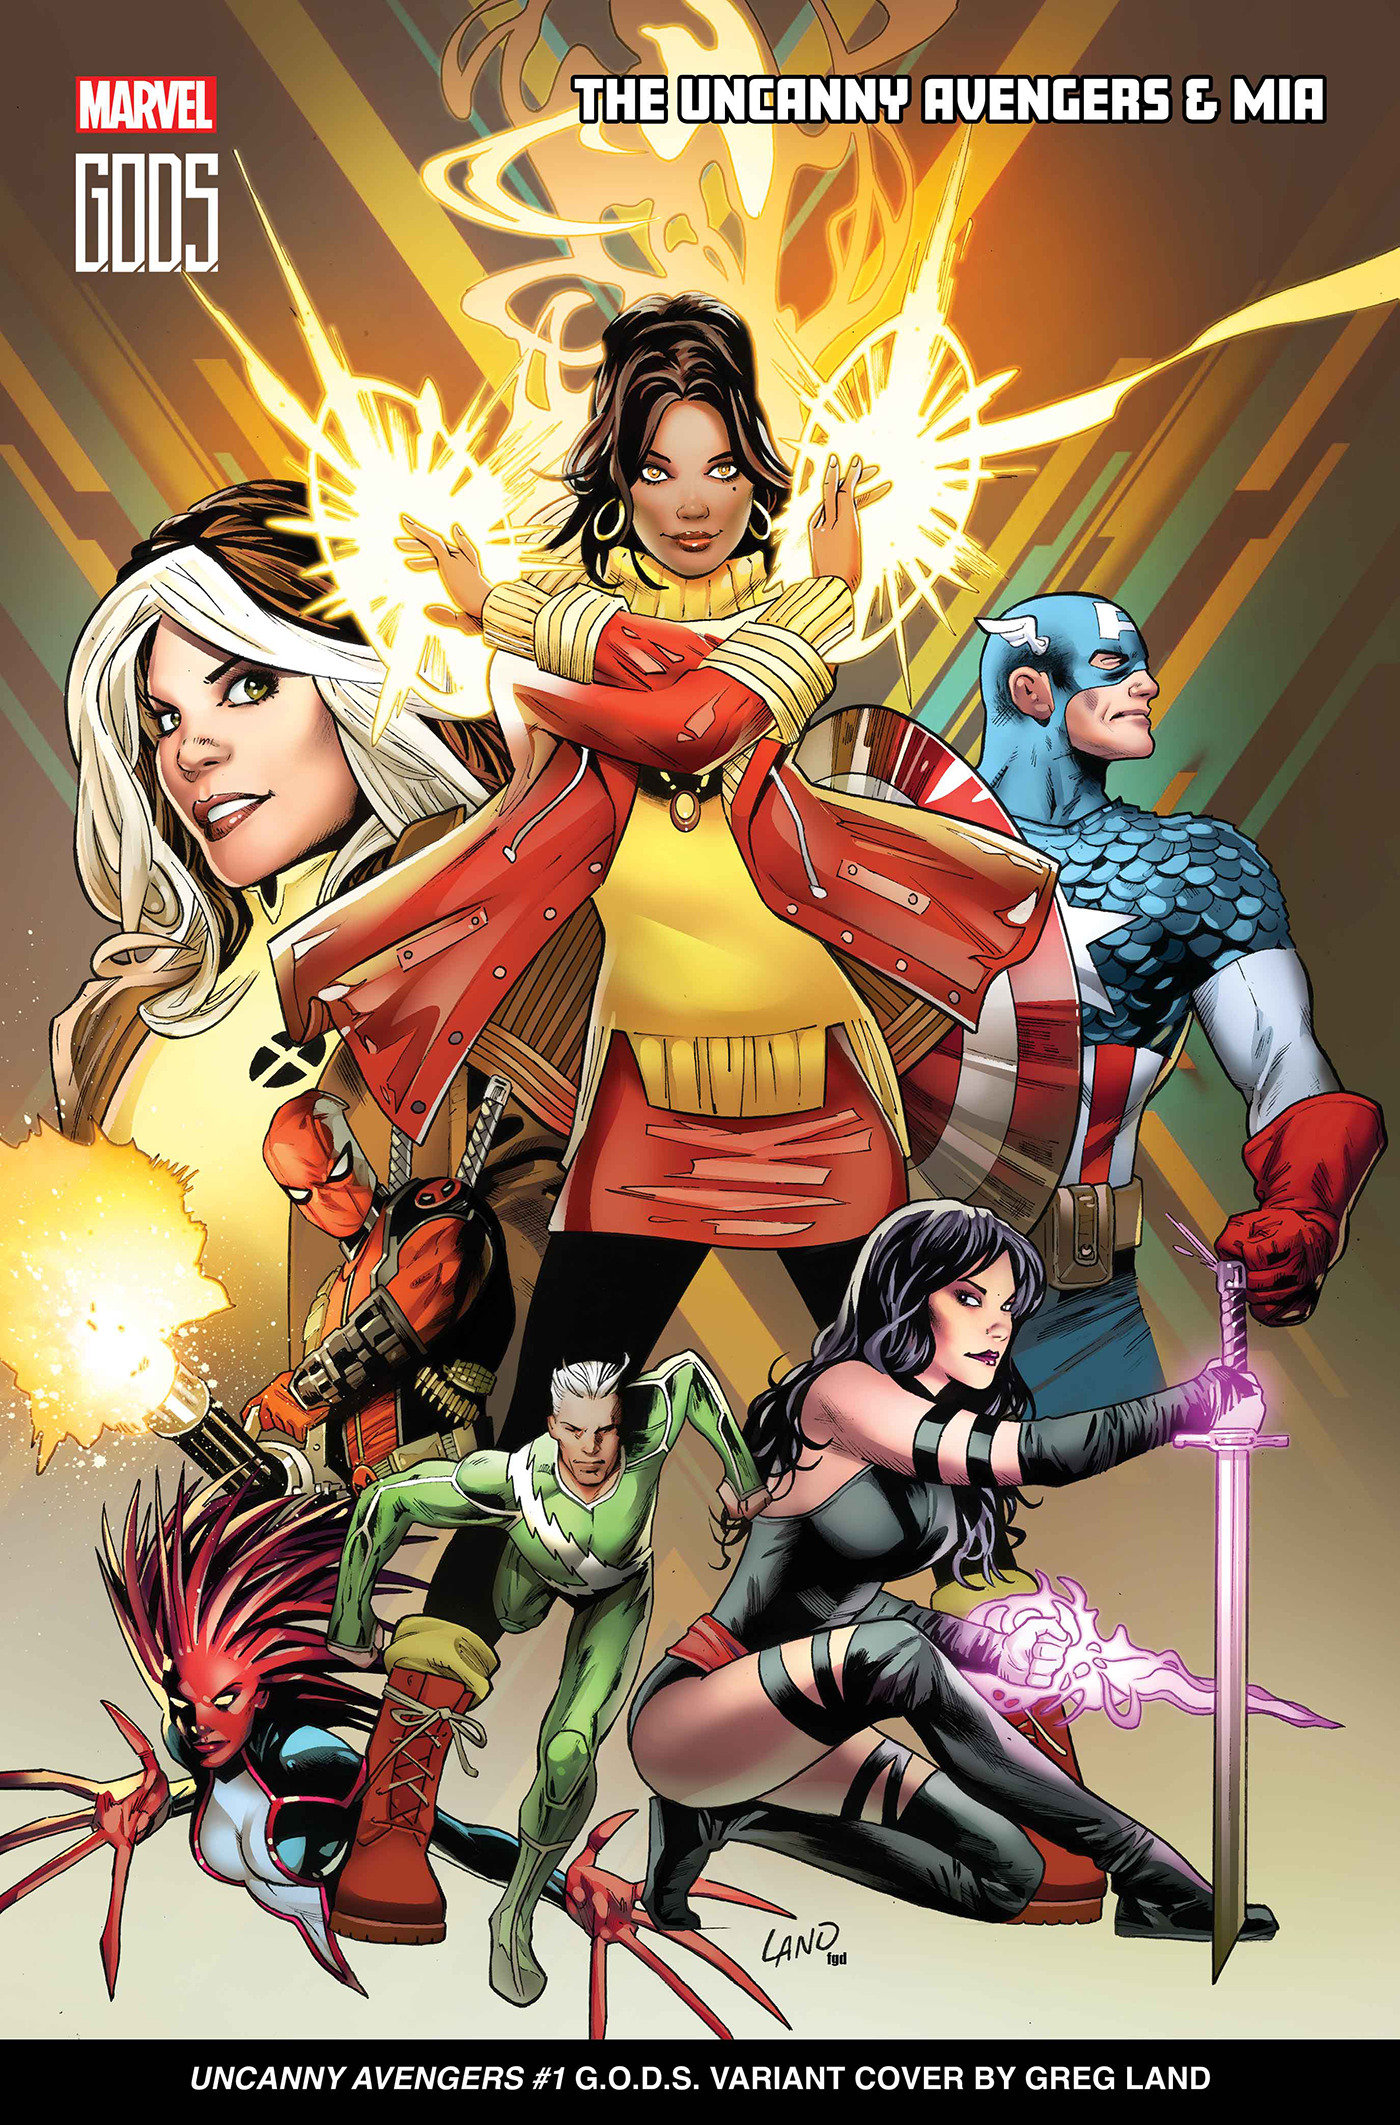 Women Leaders in Marvel Comics